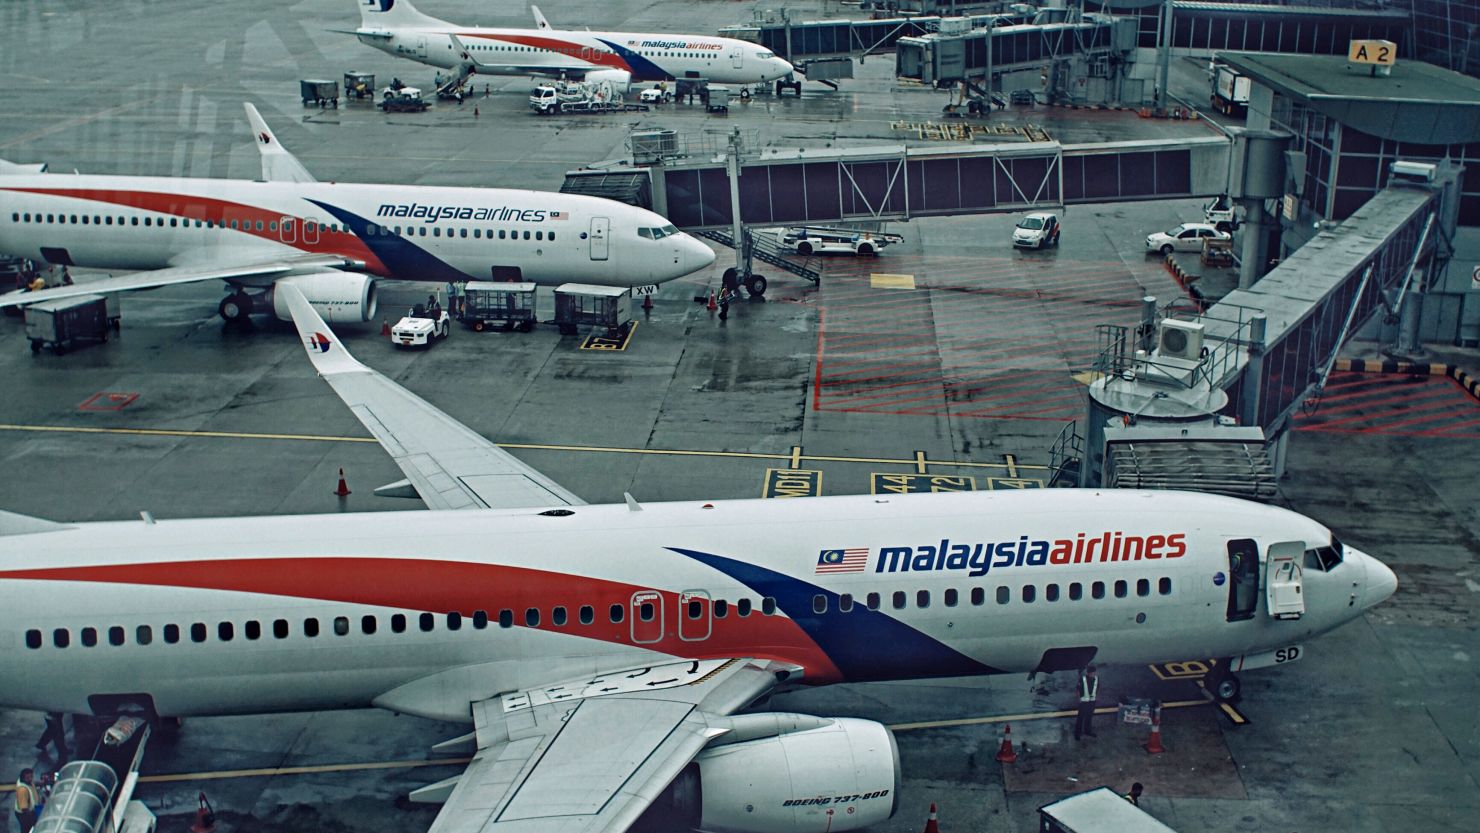 Malaysian Airlines aircraft at the Kuala Lumpur International airport.